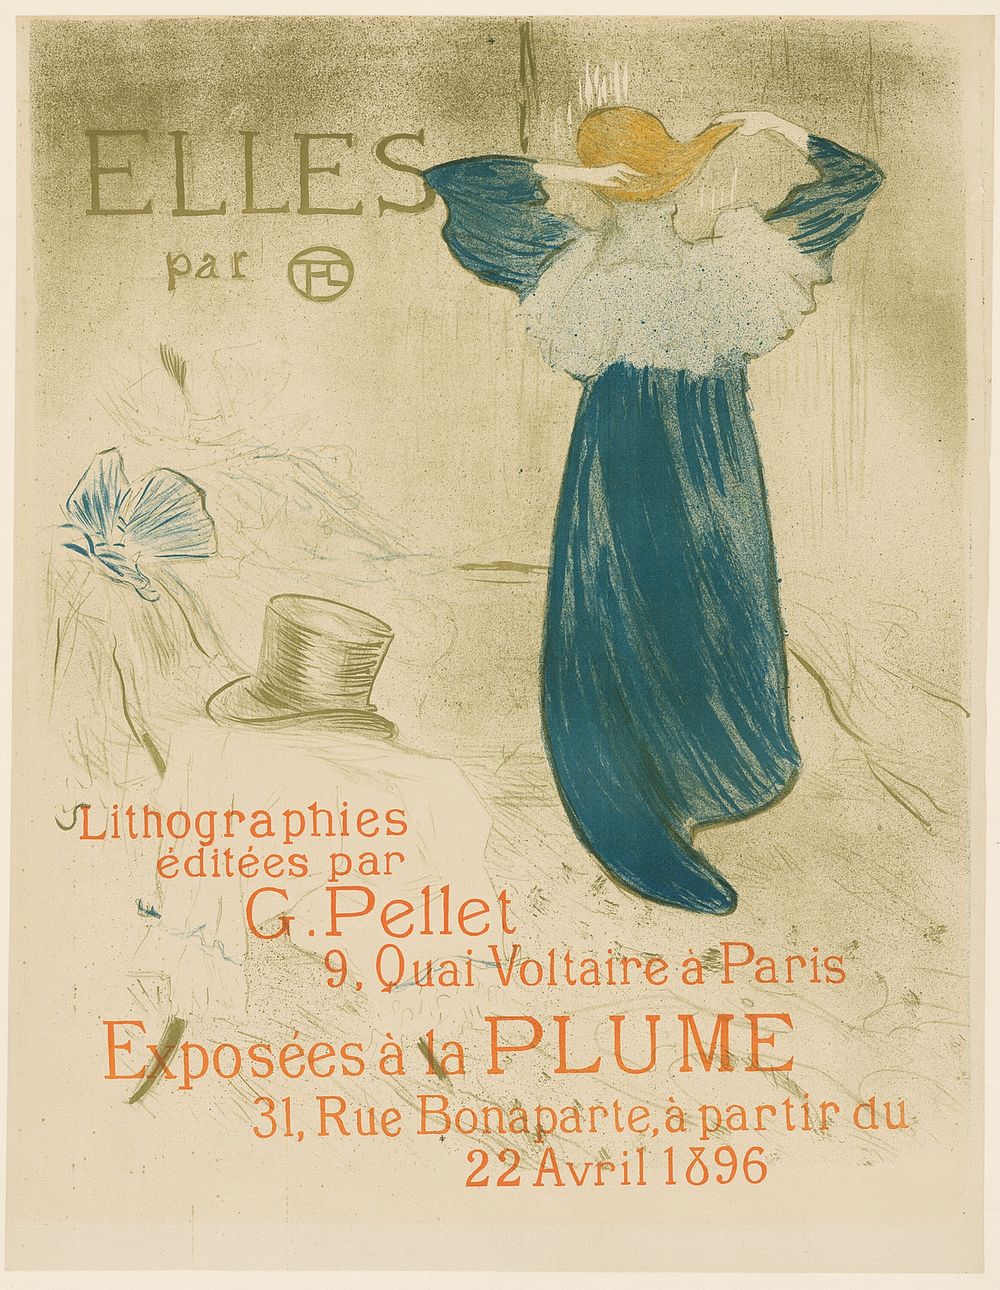 Poster for Elles by Henri de Toulouse-Lautrec